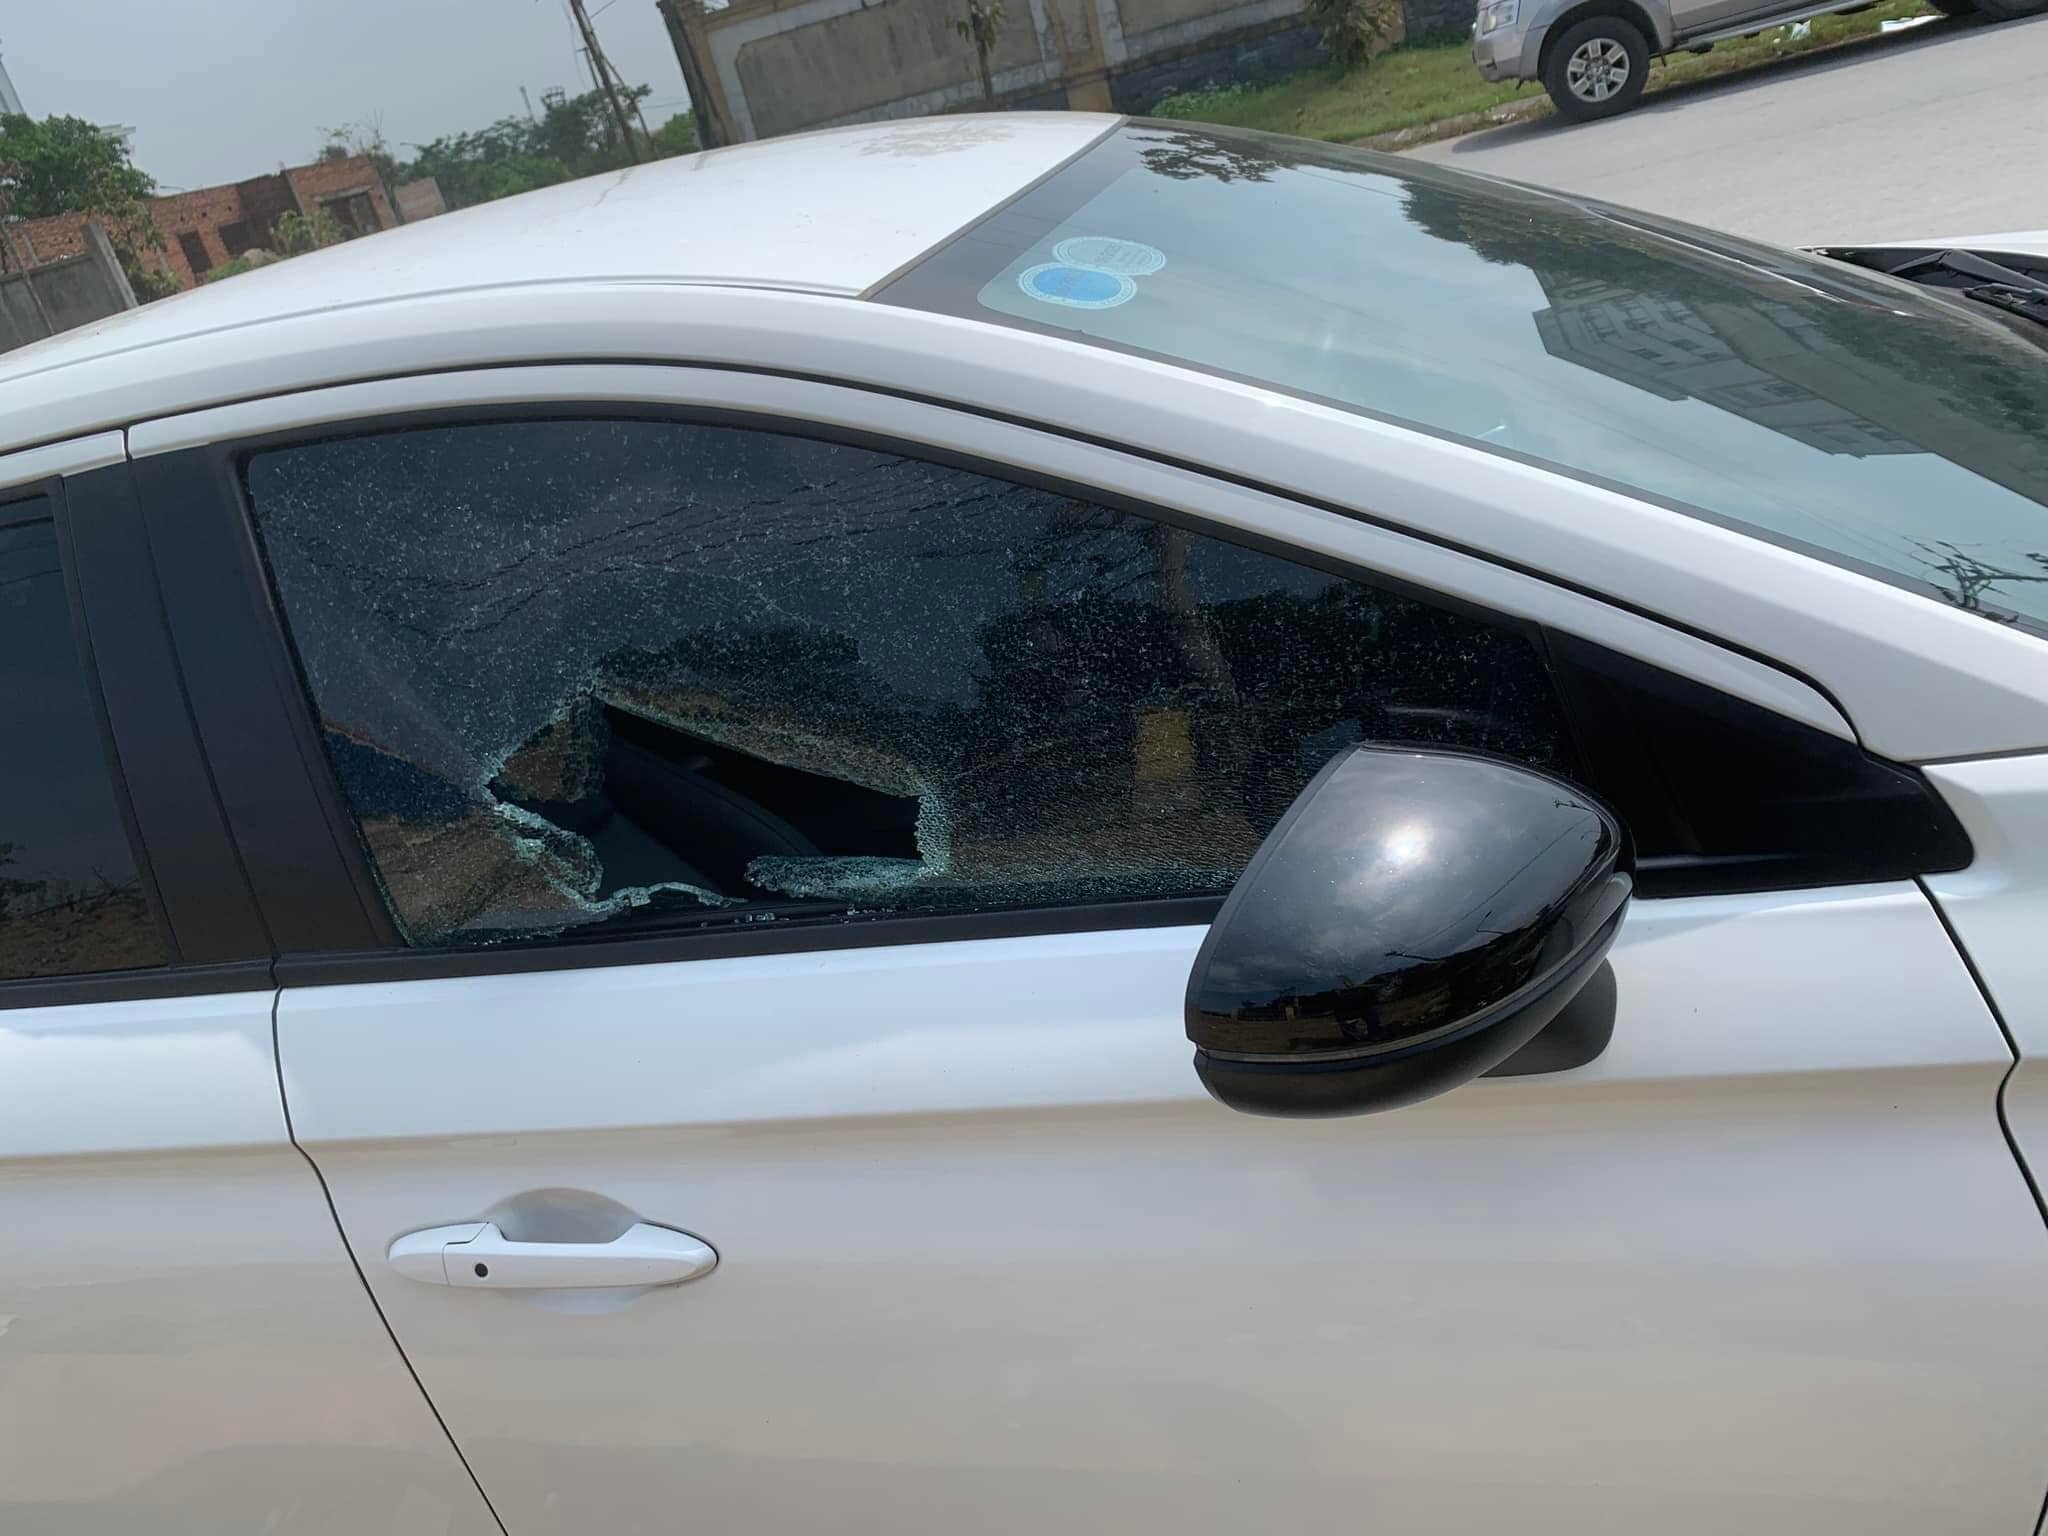 Chiếc ô tô bị kẻ gian đập vỡ kính.